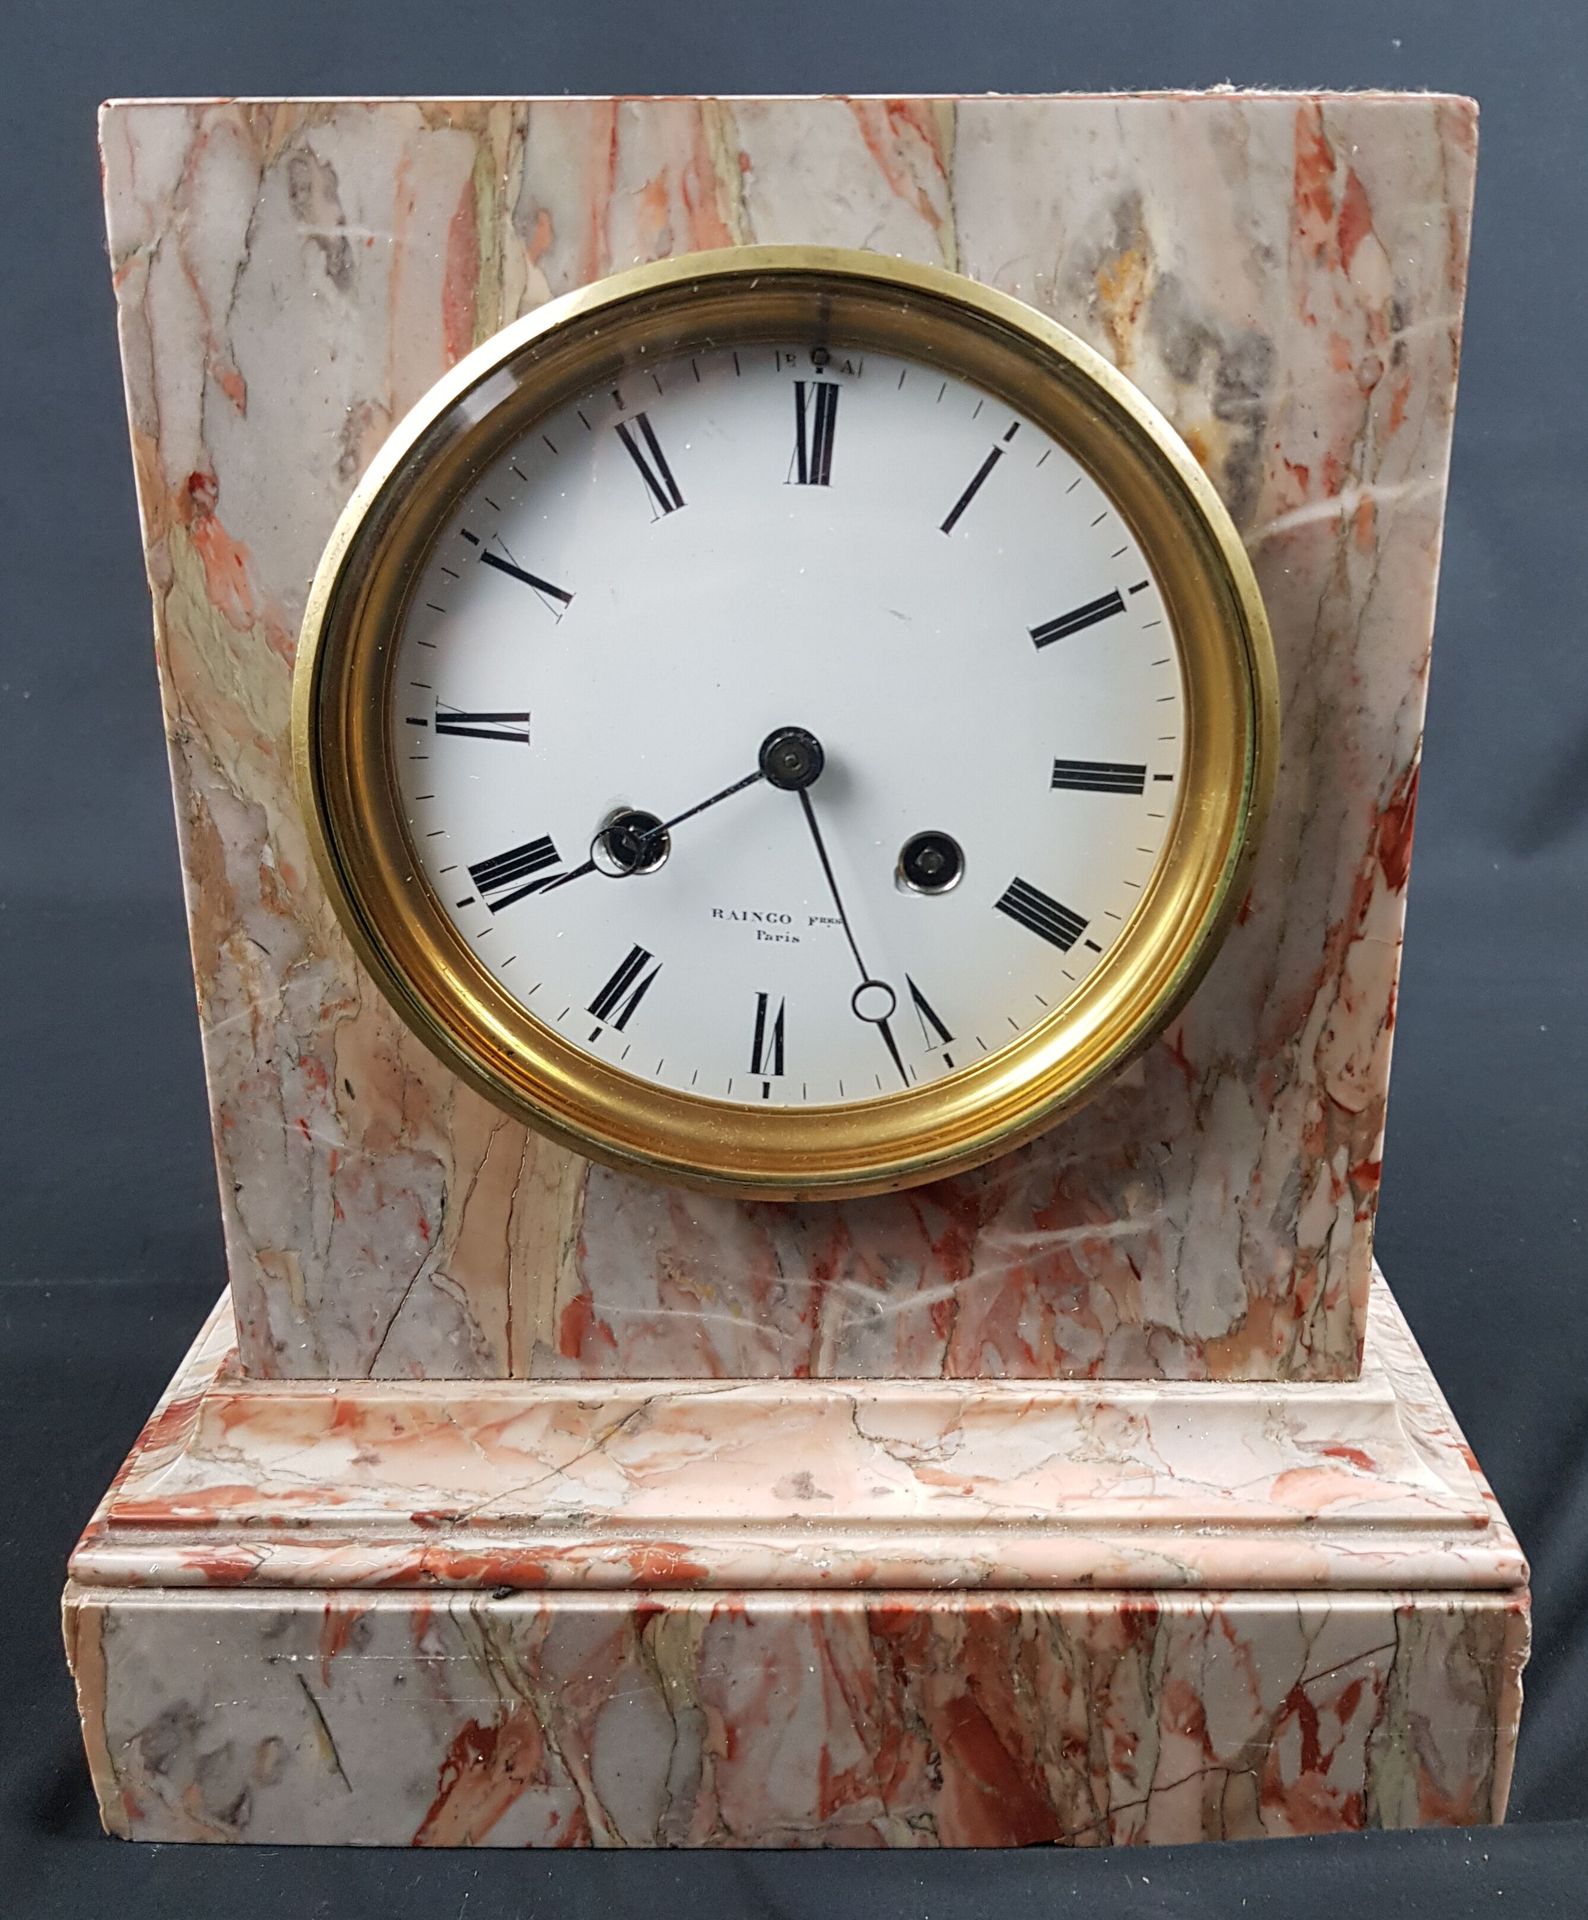 Null RAINGO PARIS - Orologio di marmo. Diametro del quadrante 15 cm - usura